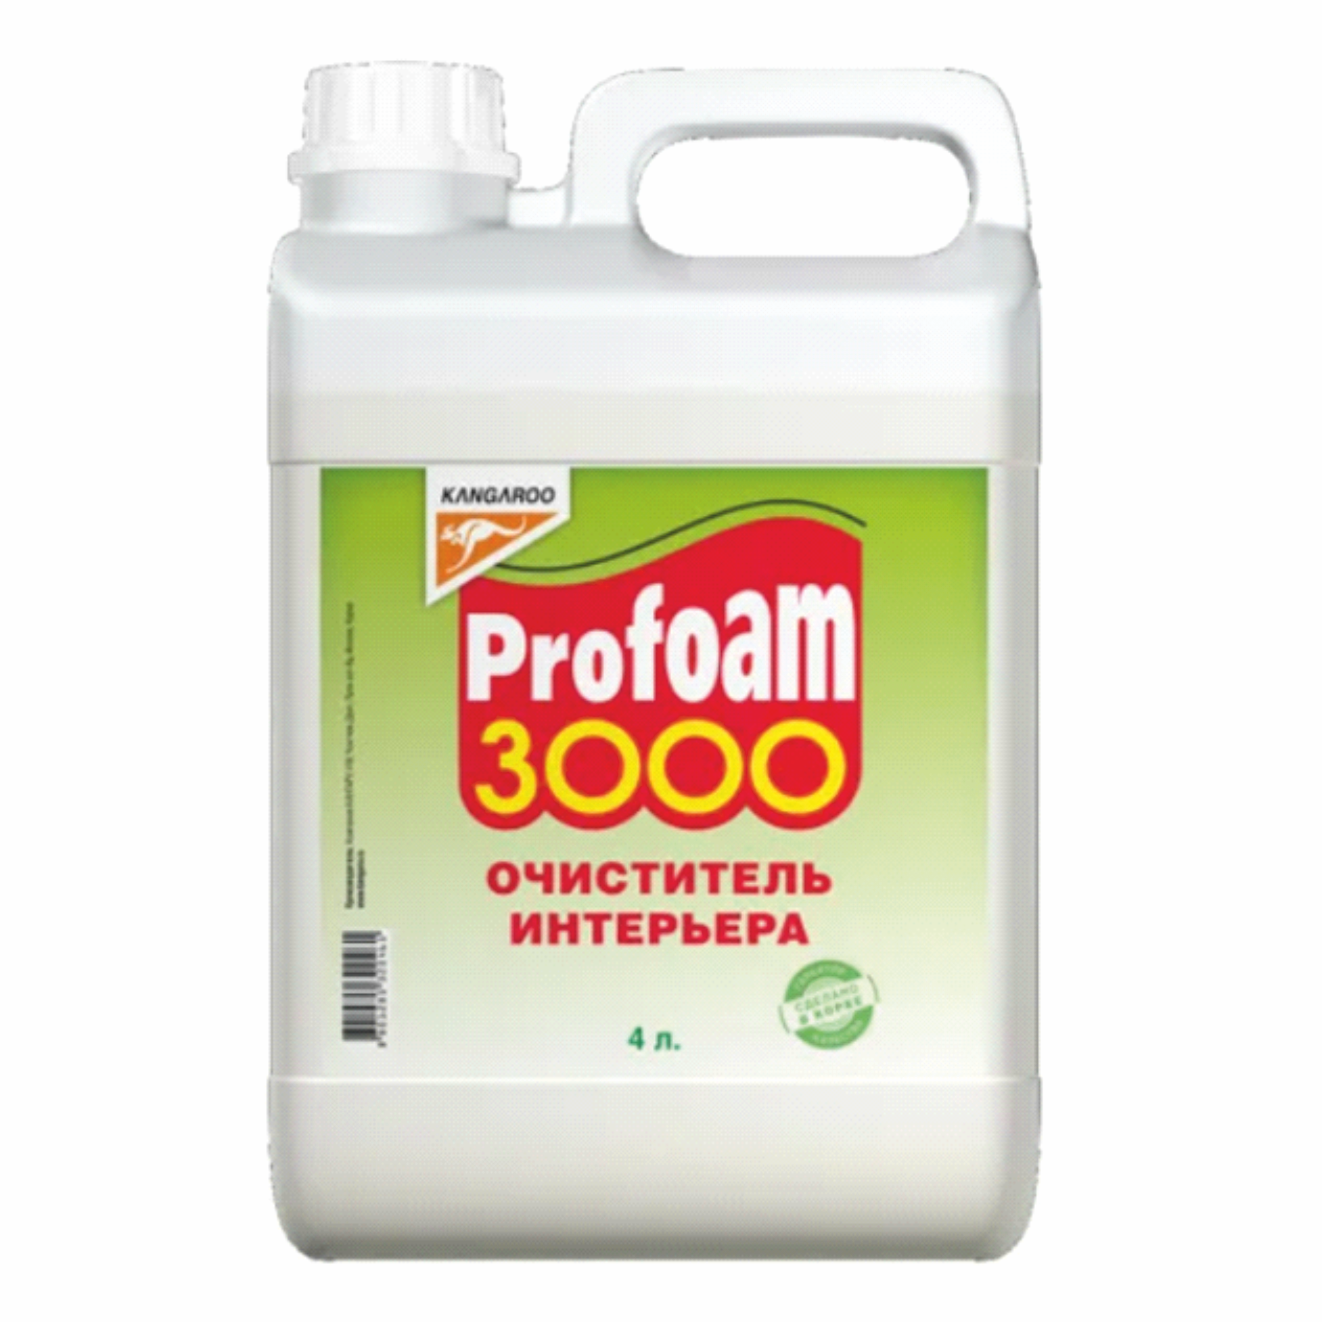 Очиститель универсальный PROFOAM 3000